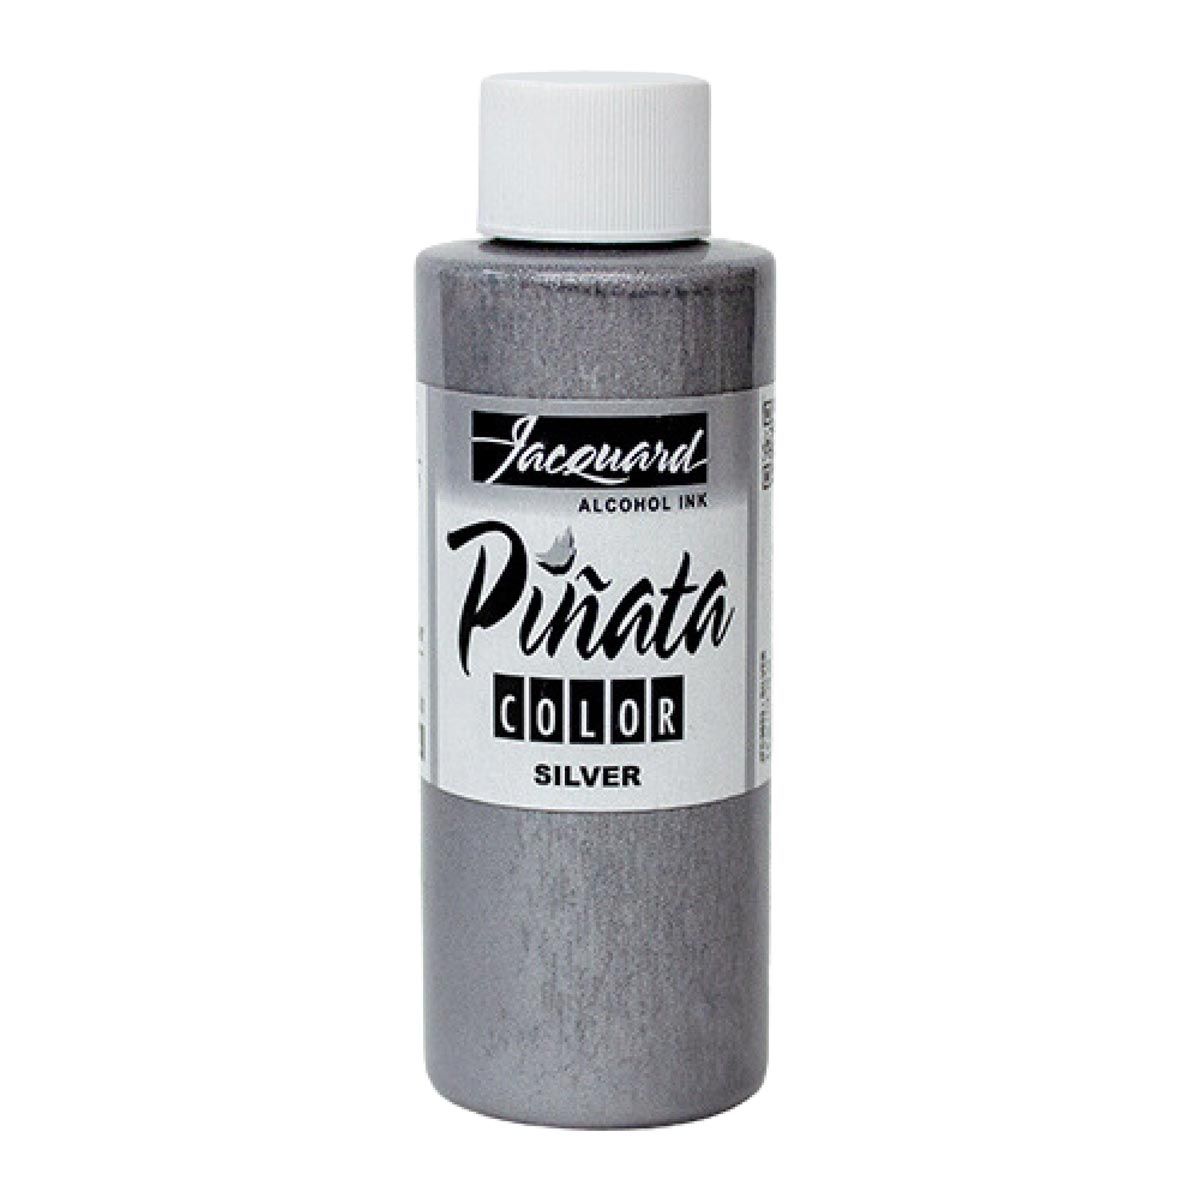 Piñata Color Alcohol Ink Silver 4 oz